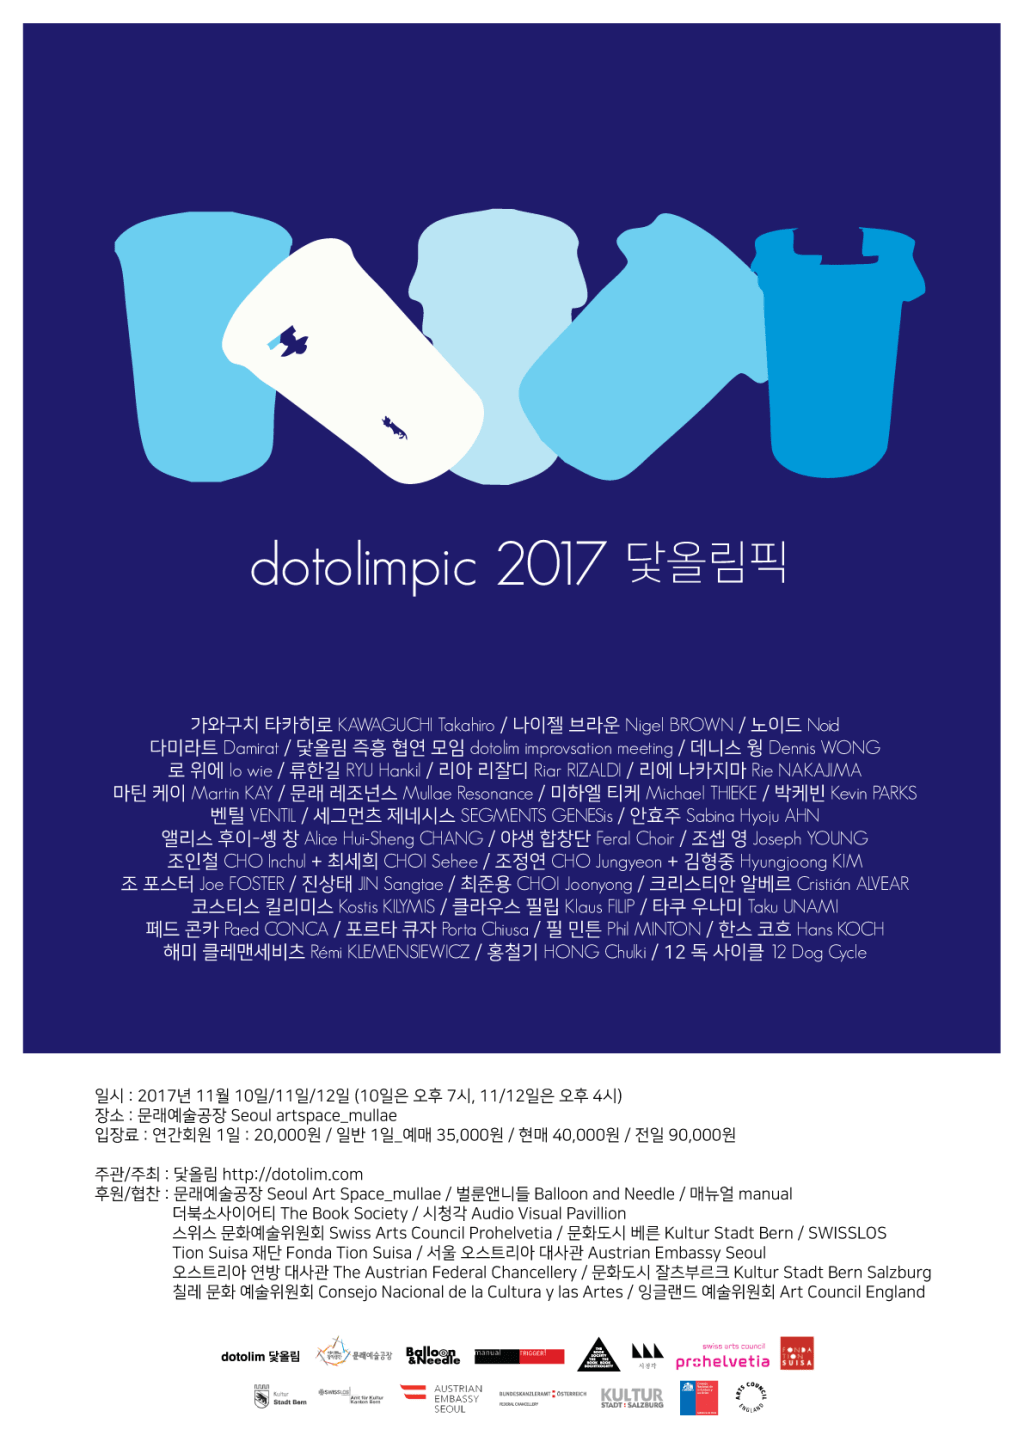 20171110~1112 : 닻올림픽 dotolimpic 2017